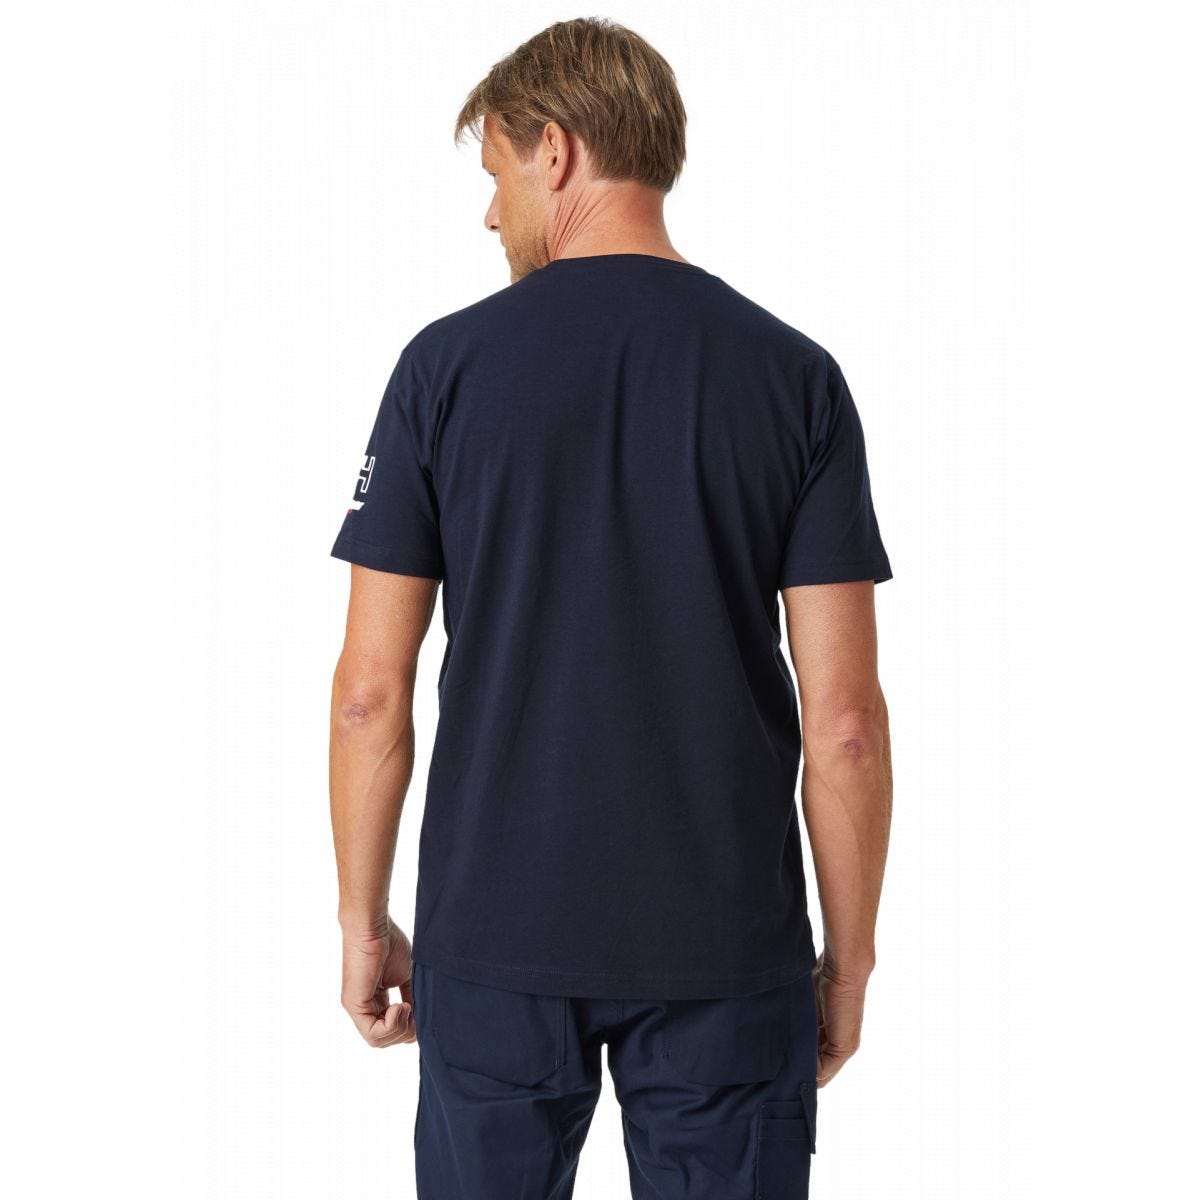 Tee-shirt Kensington Marine - Helly Hansen - Taille S 3